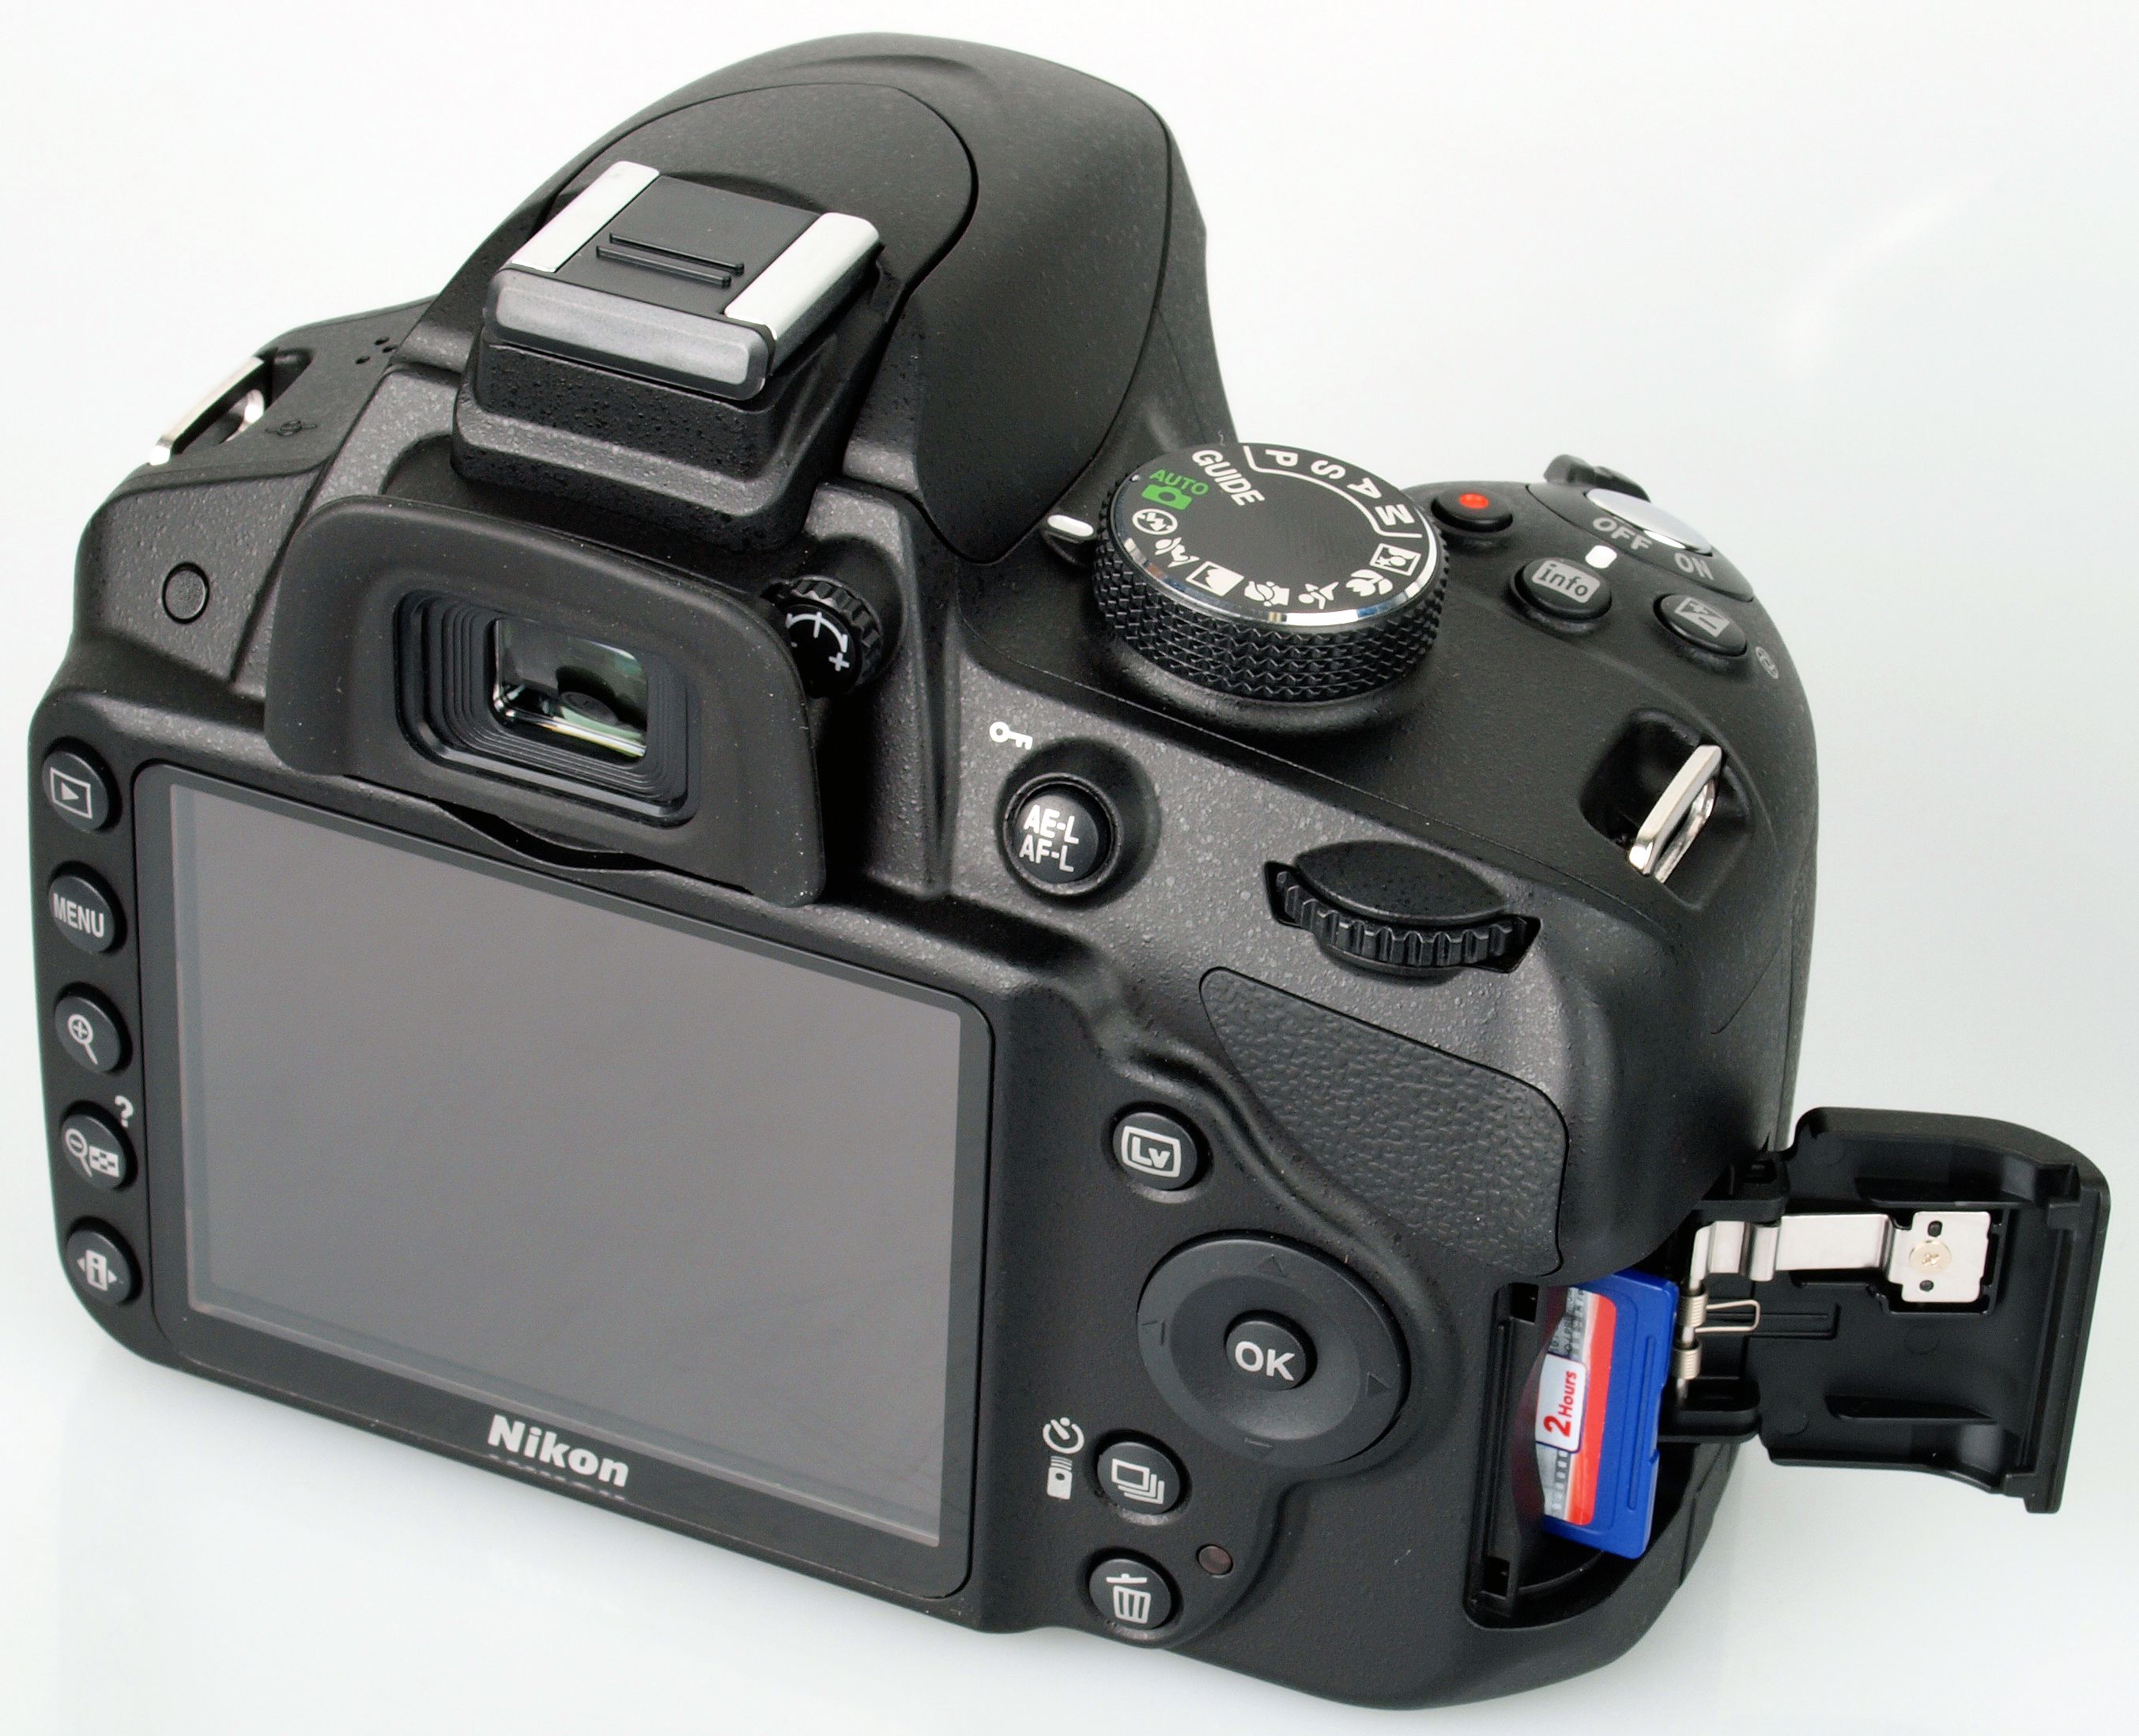 Nikon D3200 24.2 MP CMOS Digital SLR with 18-55mm f/3.5-5.6 Auto Focus-S DX  VR NIKKOR Zoom Lens (Black) (OLD MODEL) : Electronics 